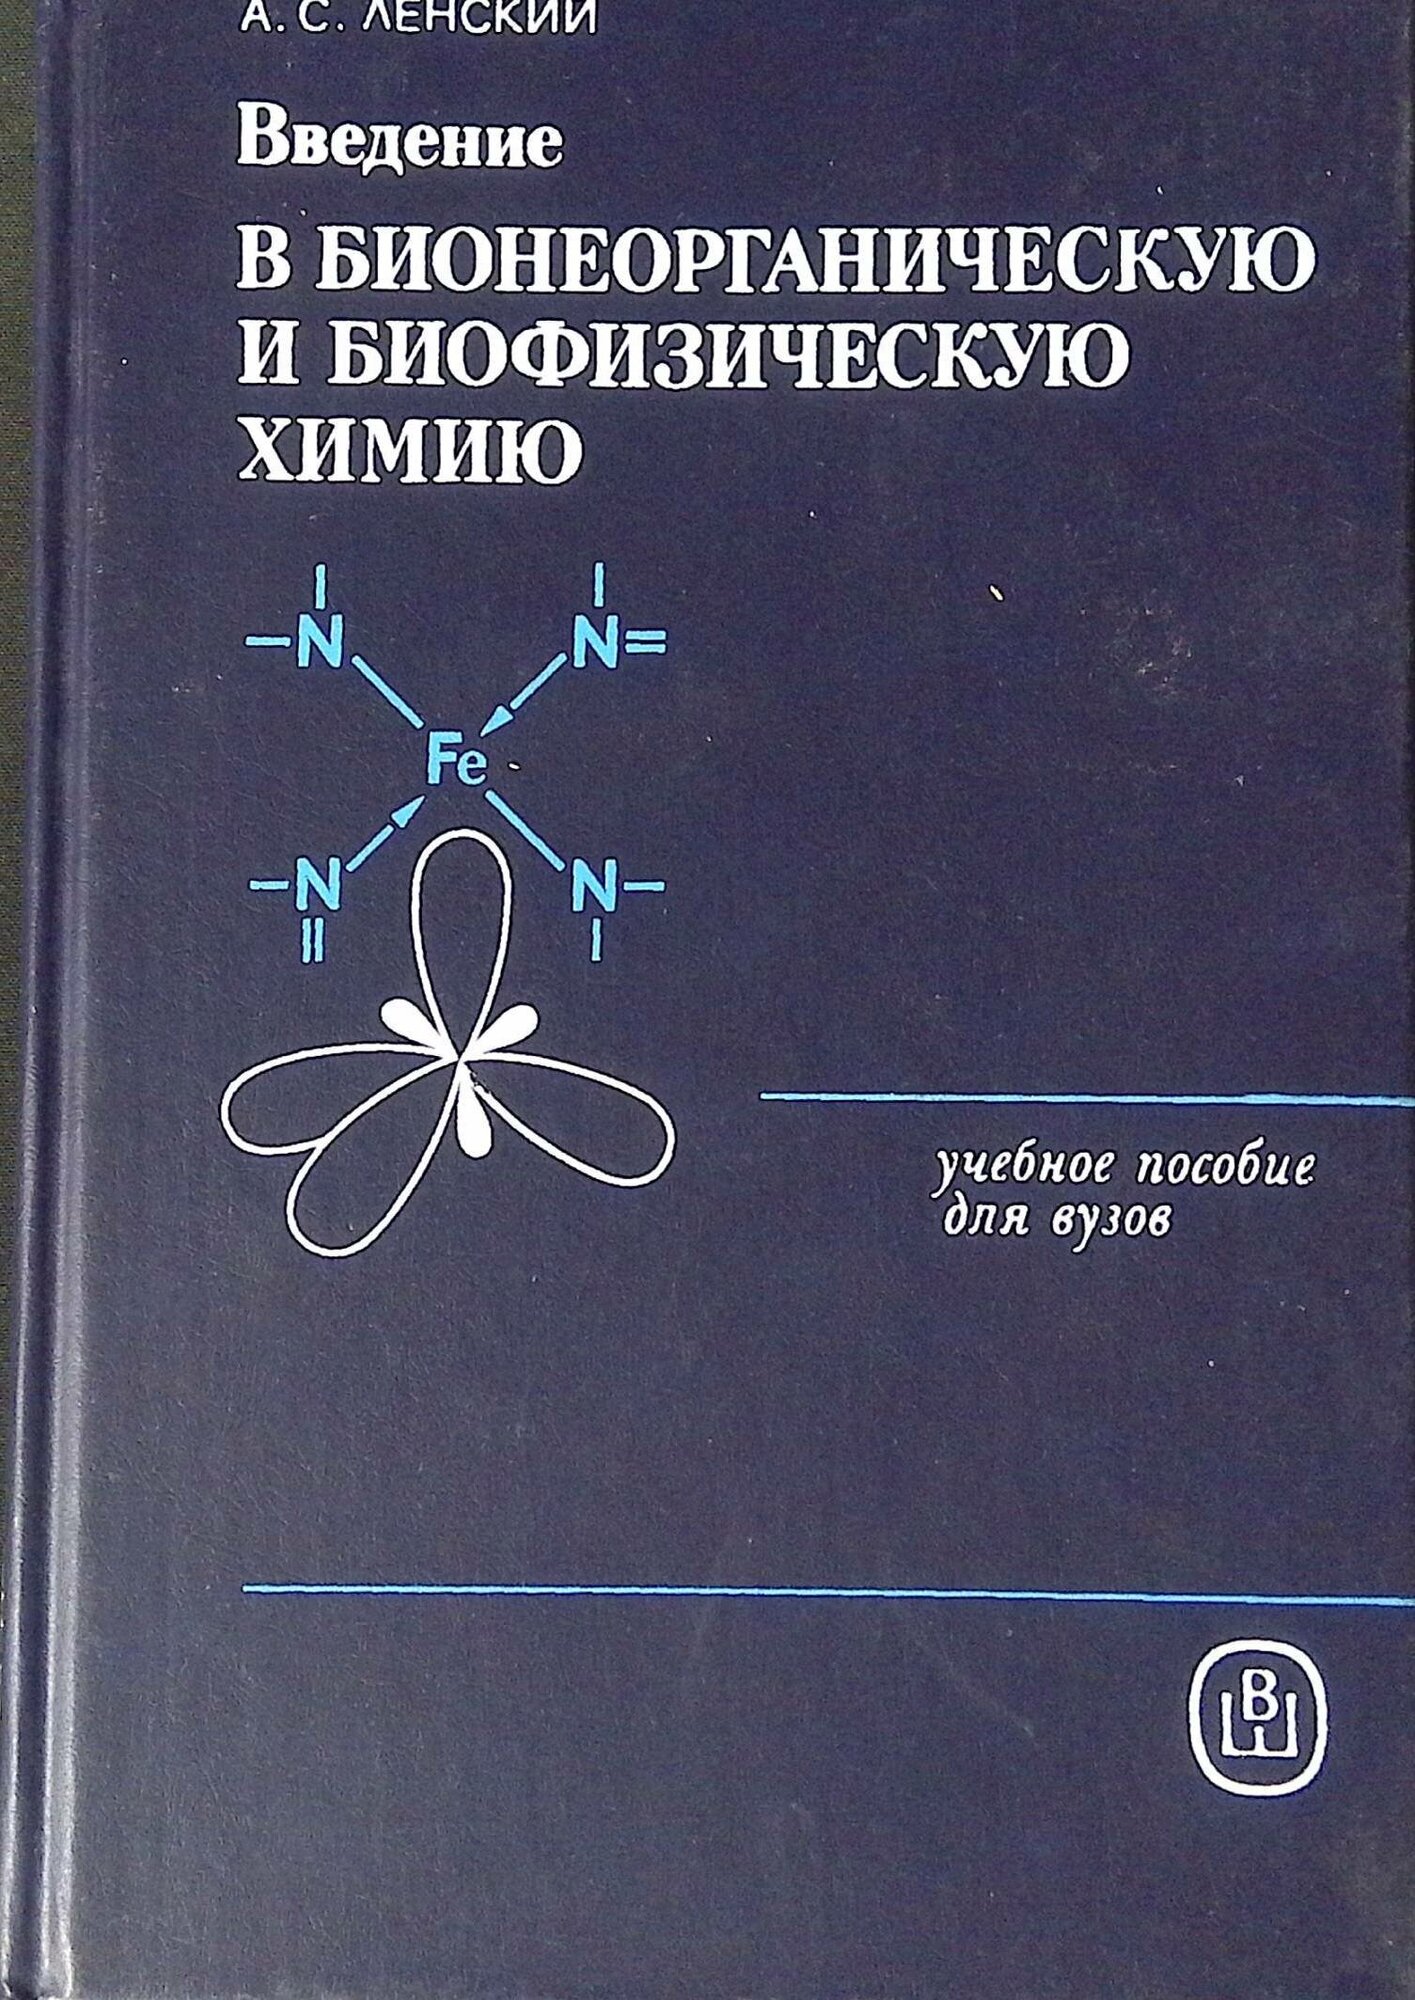 Введение в бионеорганическую и биофизическую химию. 1989г.